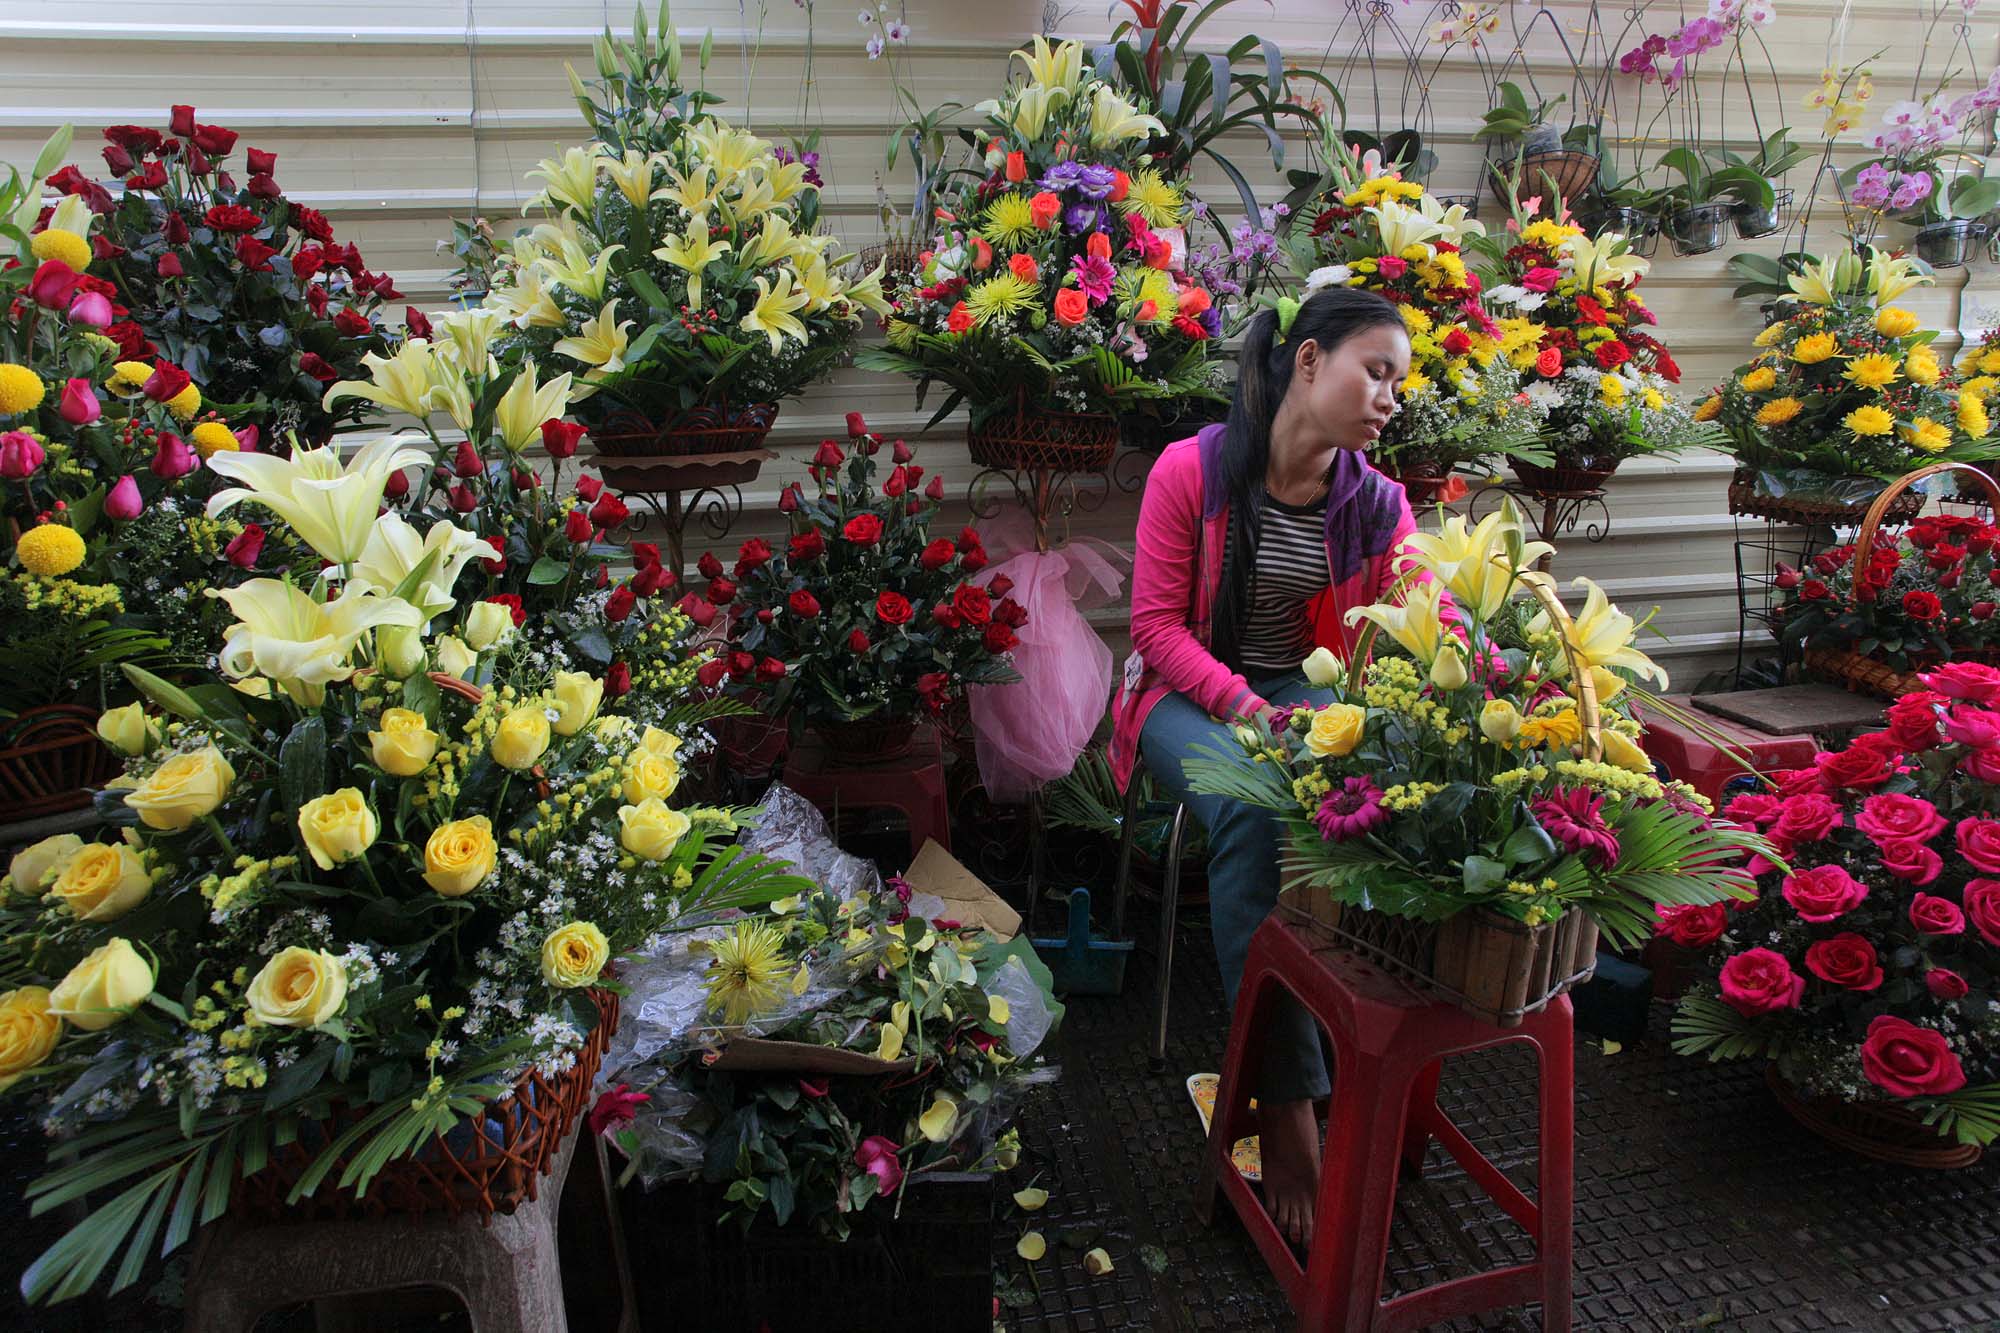 bill-hocker-flower-vendor-central-market-phnom-penh-cambodia-2010